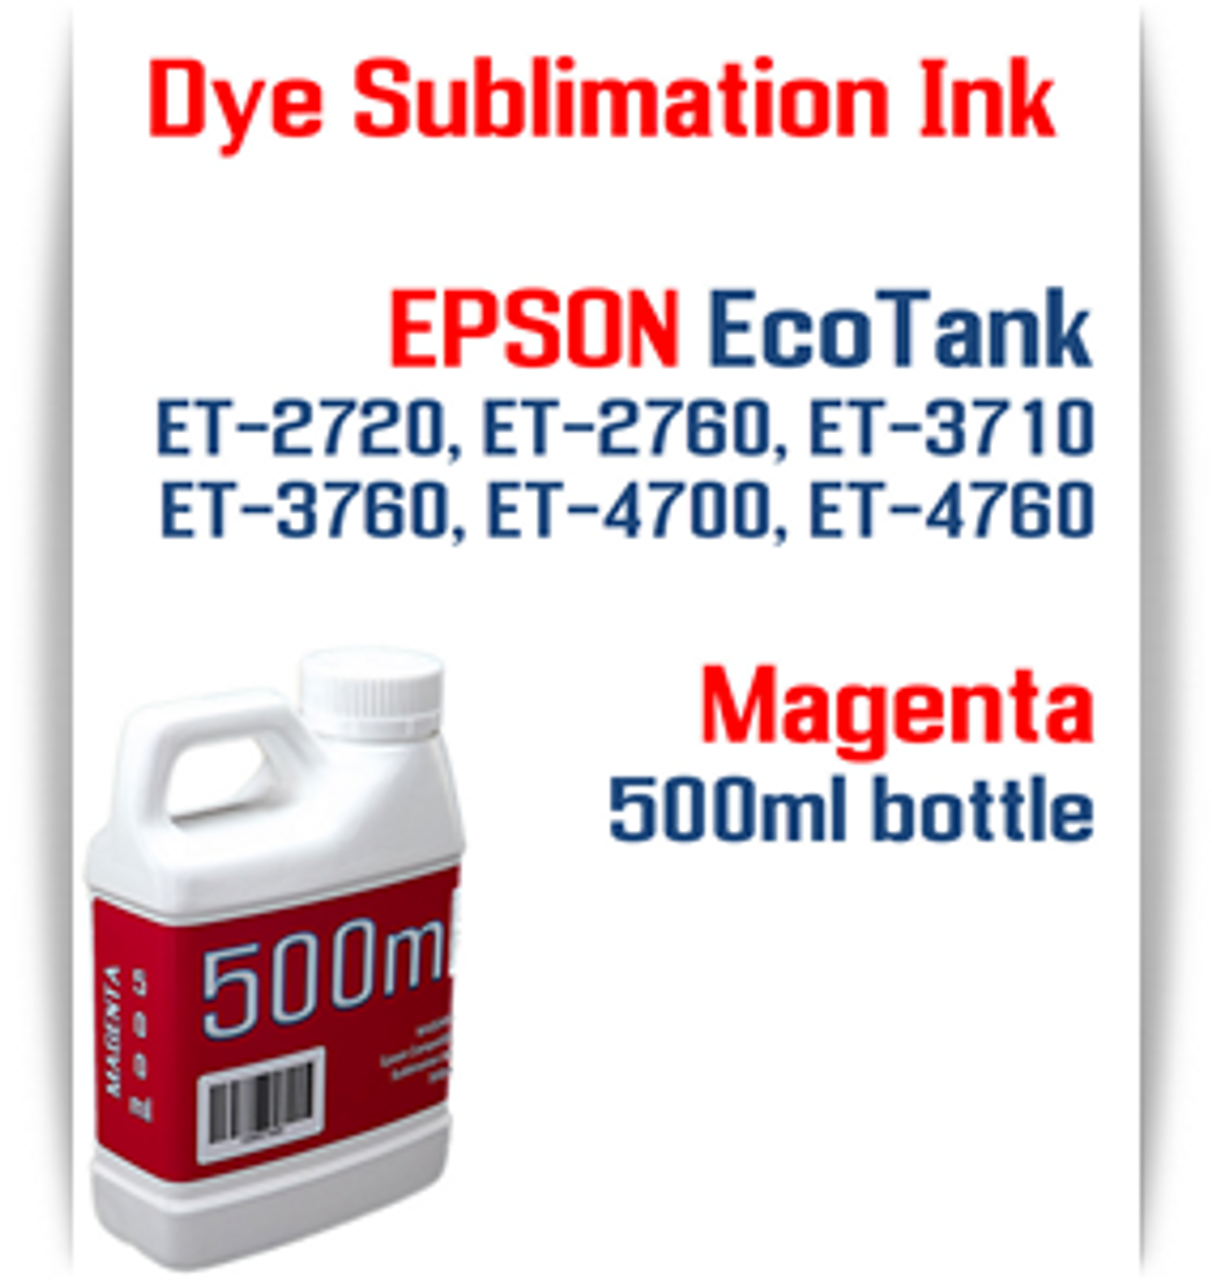 Magenta EPSON EcoTank ET-2720 ET-2760 Printer 500ml bottles Dye Sublimation Bottle Ink